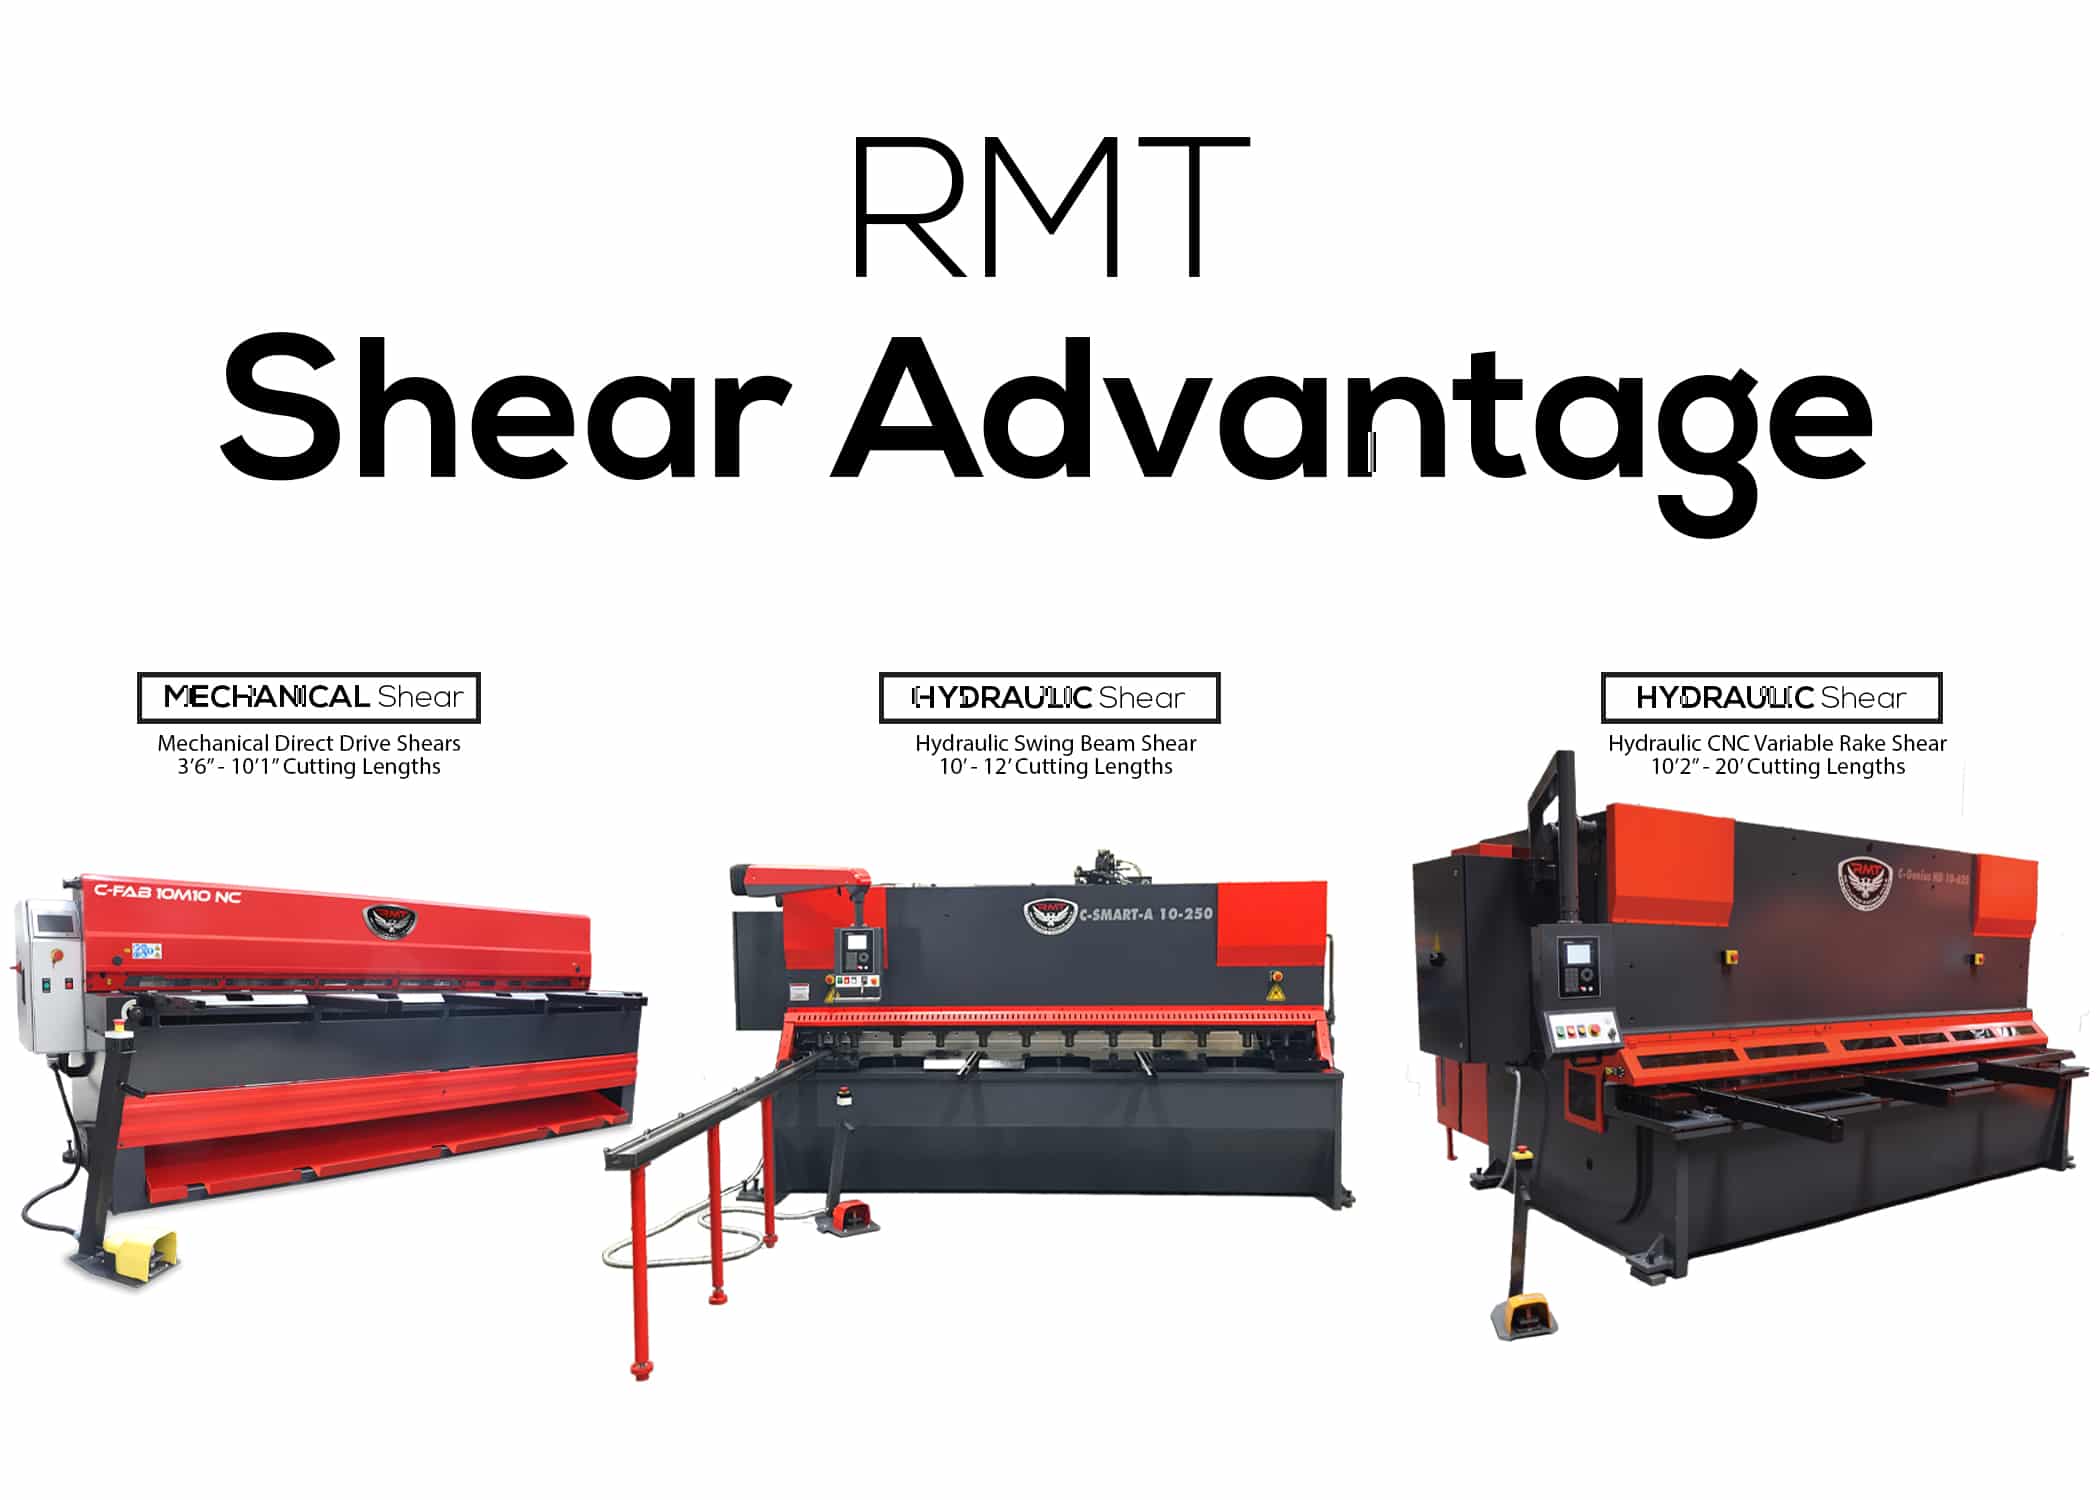 RMT Shear Advantage